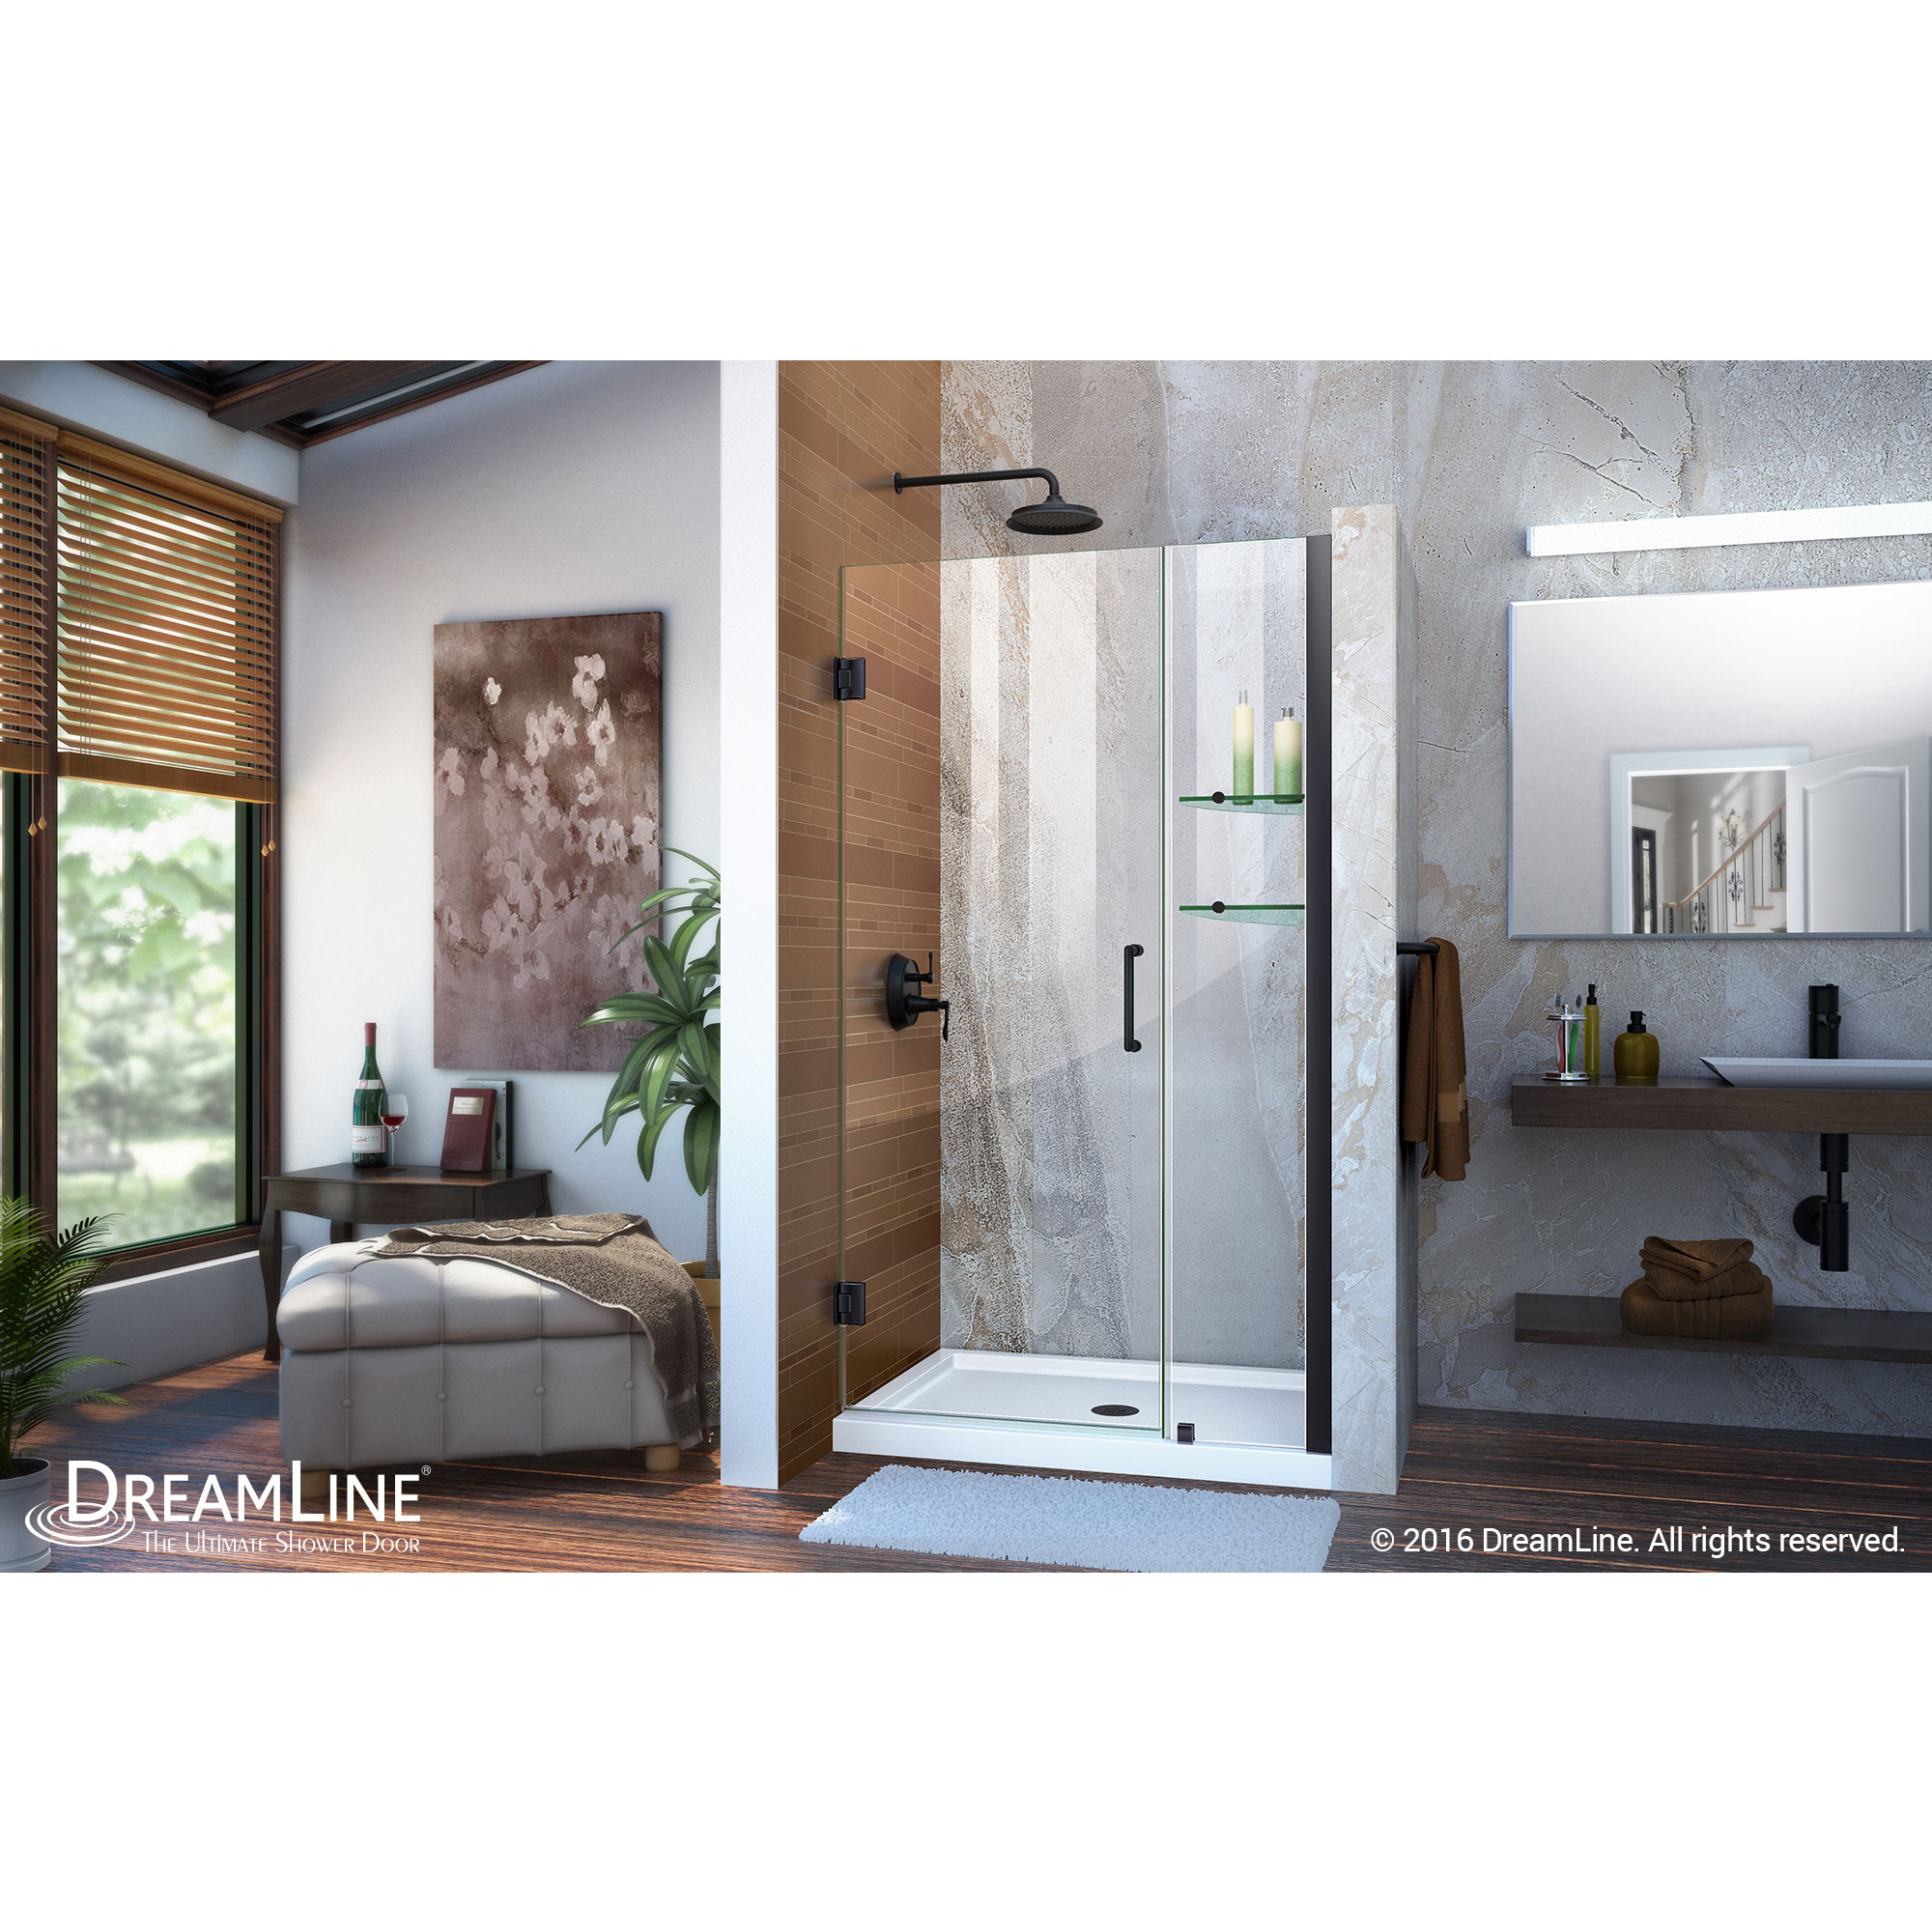 DreamLine Unidoor 40-41 in. W x 72 in. H Frameless Hinged Shower Door with Shelves in Satin Black